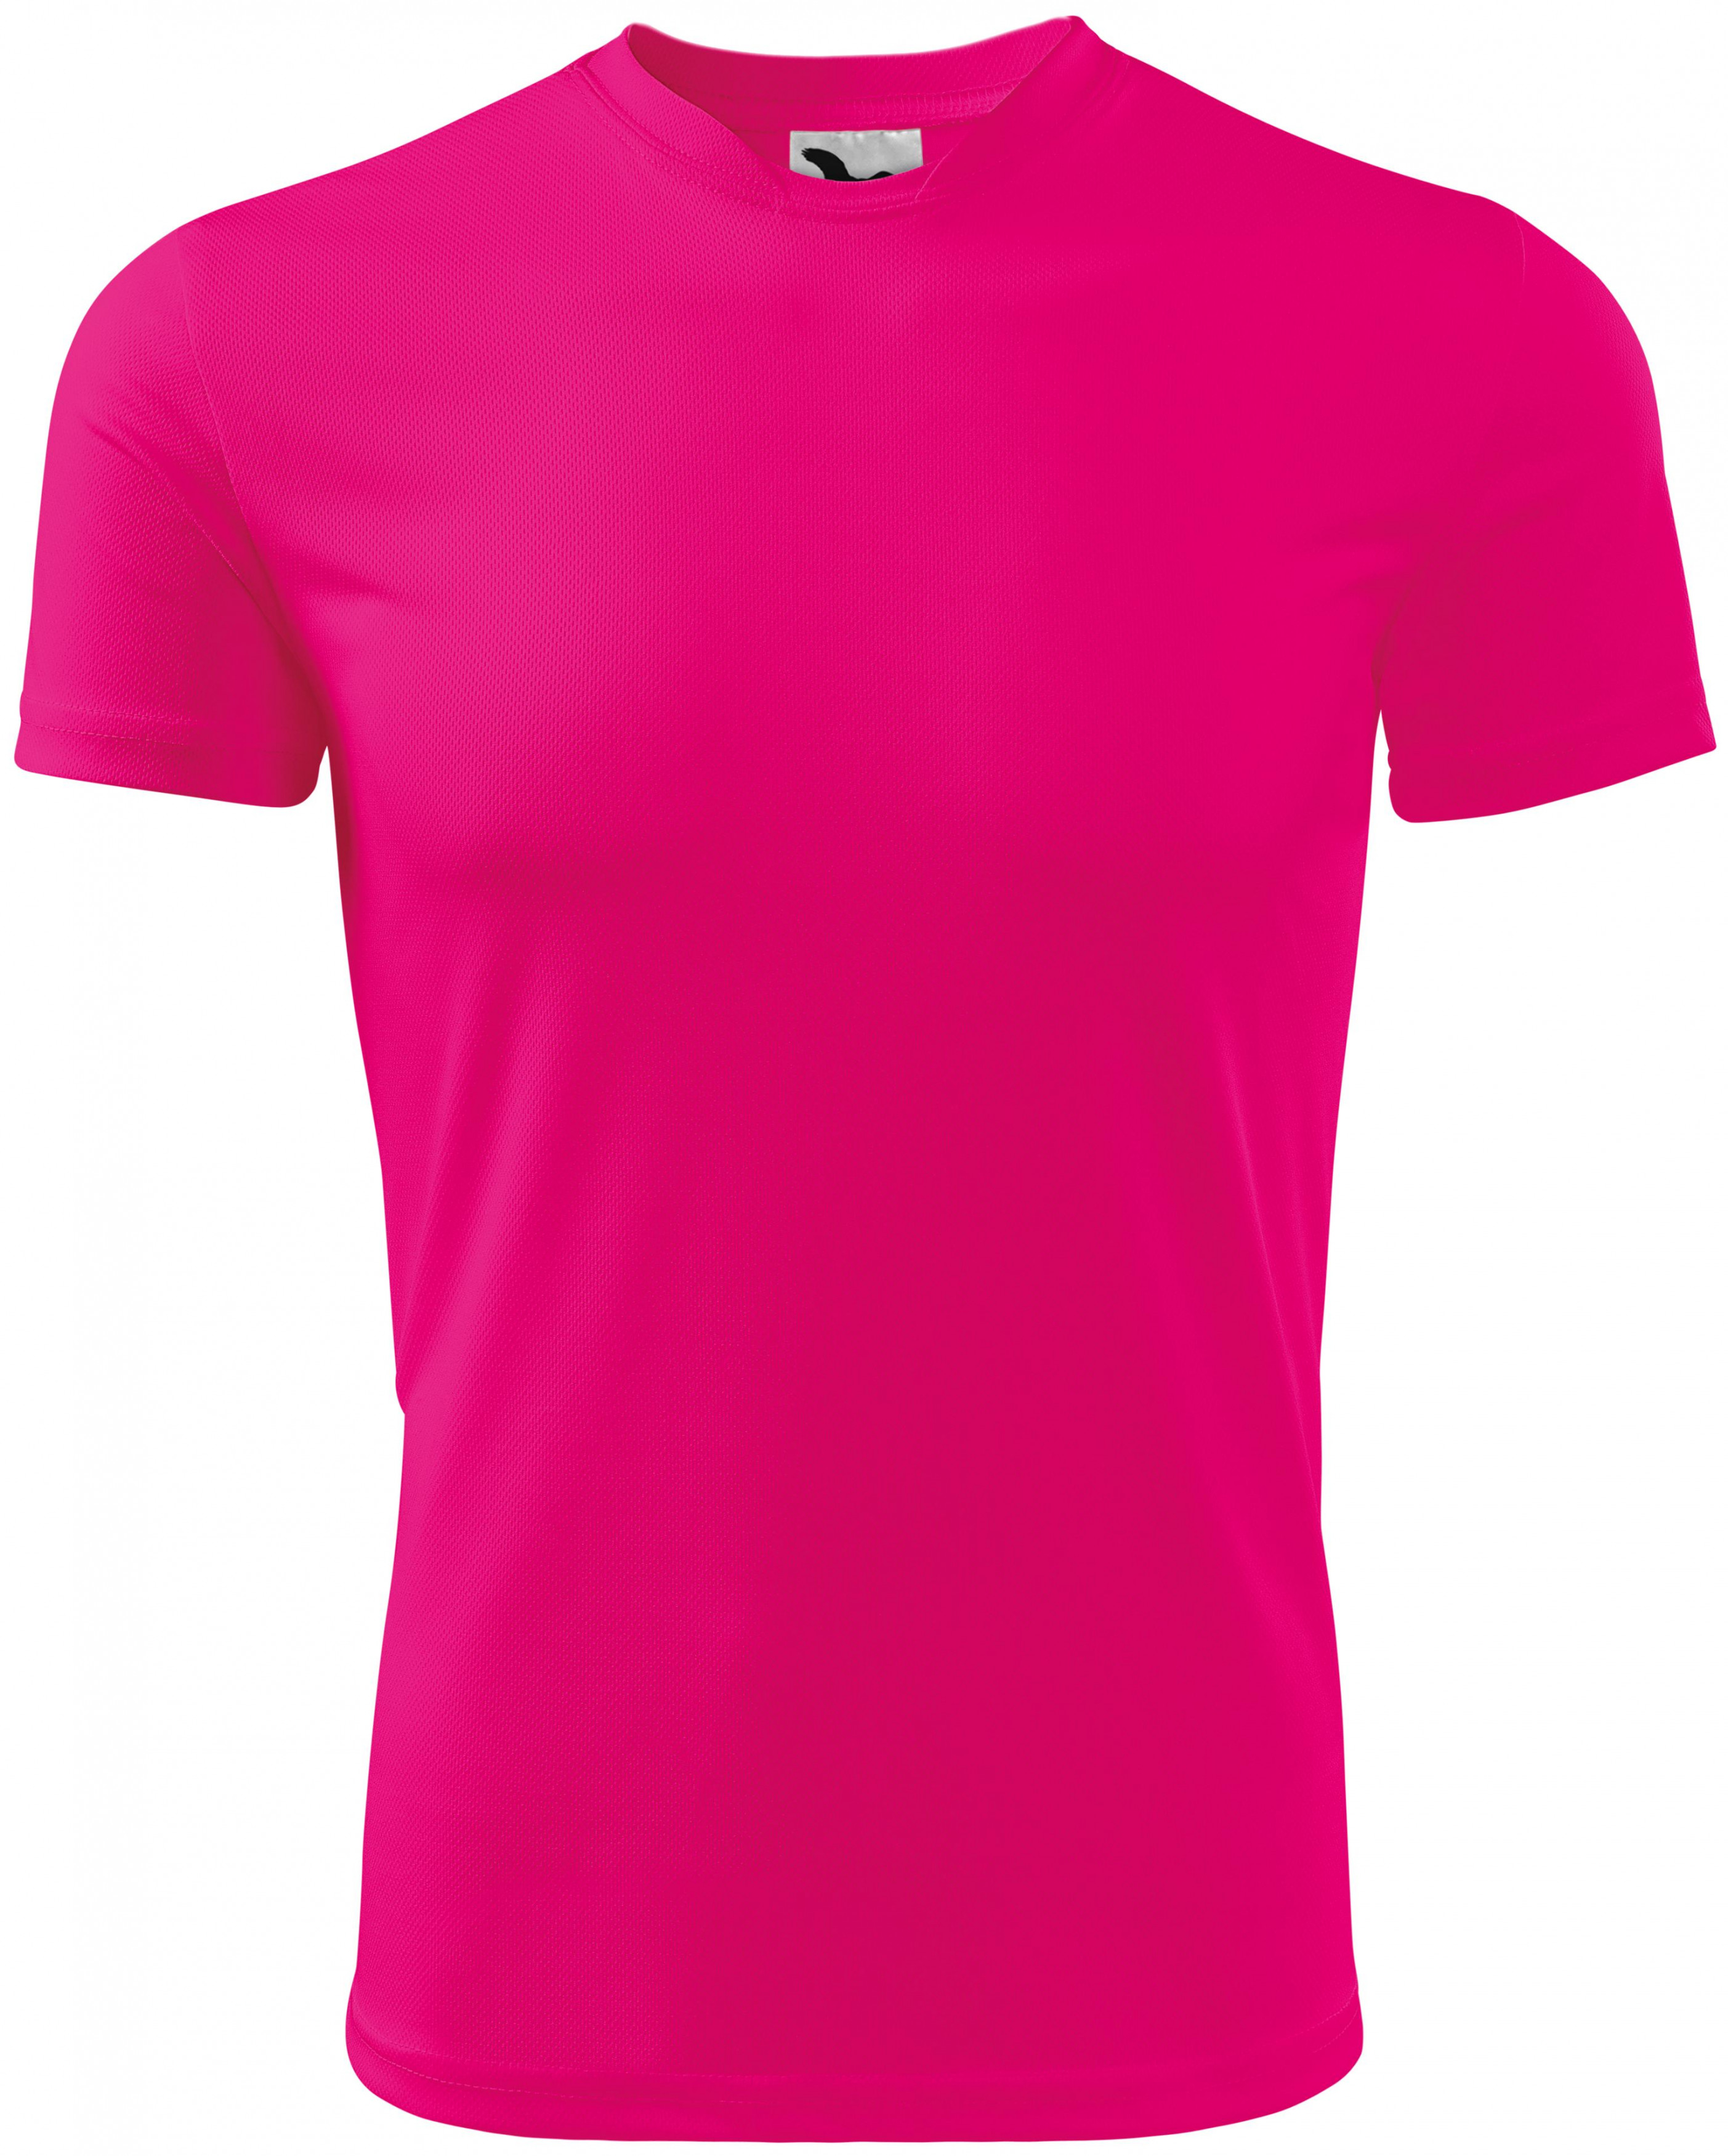 Športové tričko detské, neonová ružová, 134cm / 8rokov